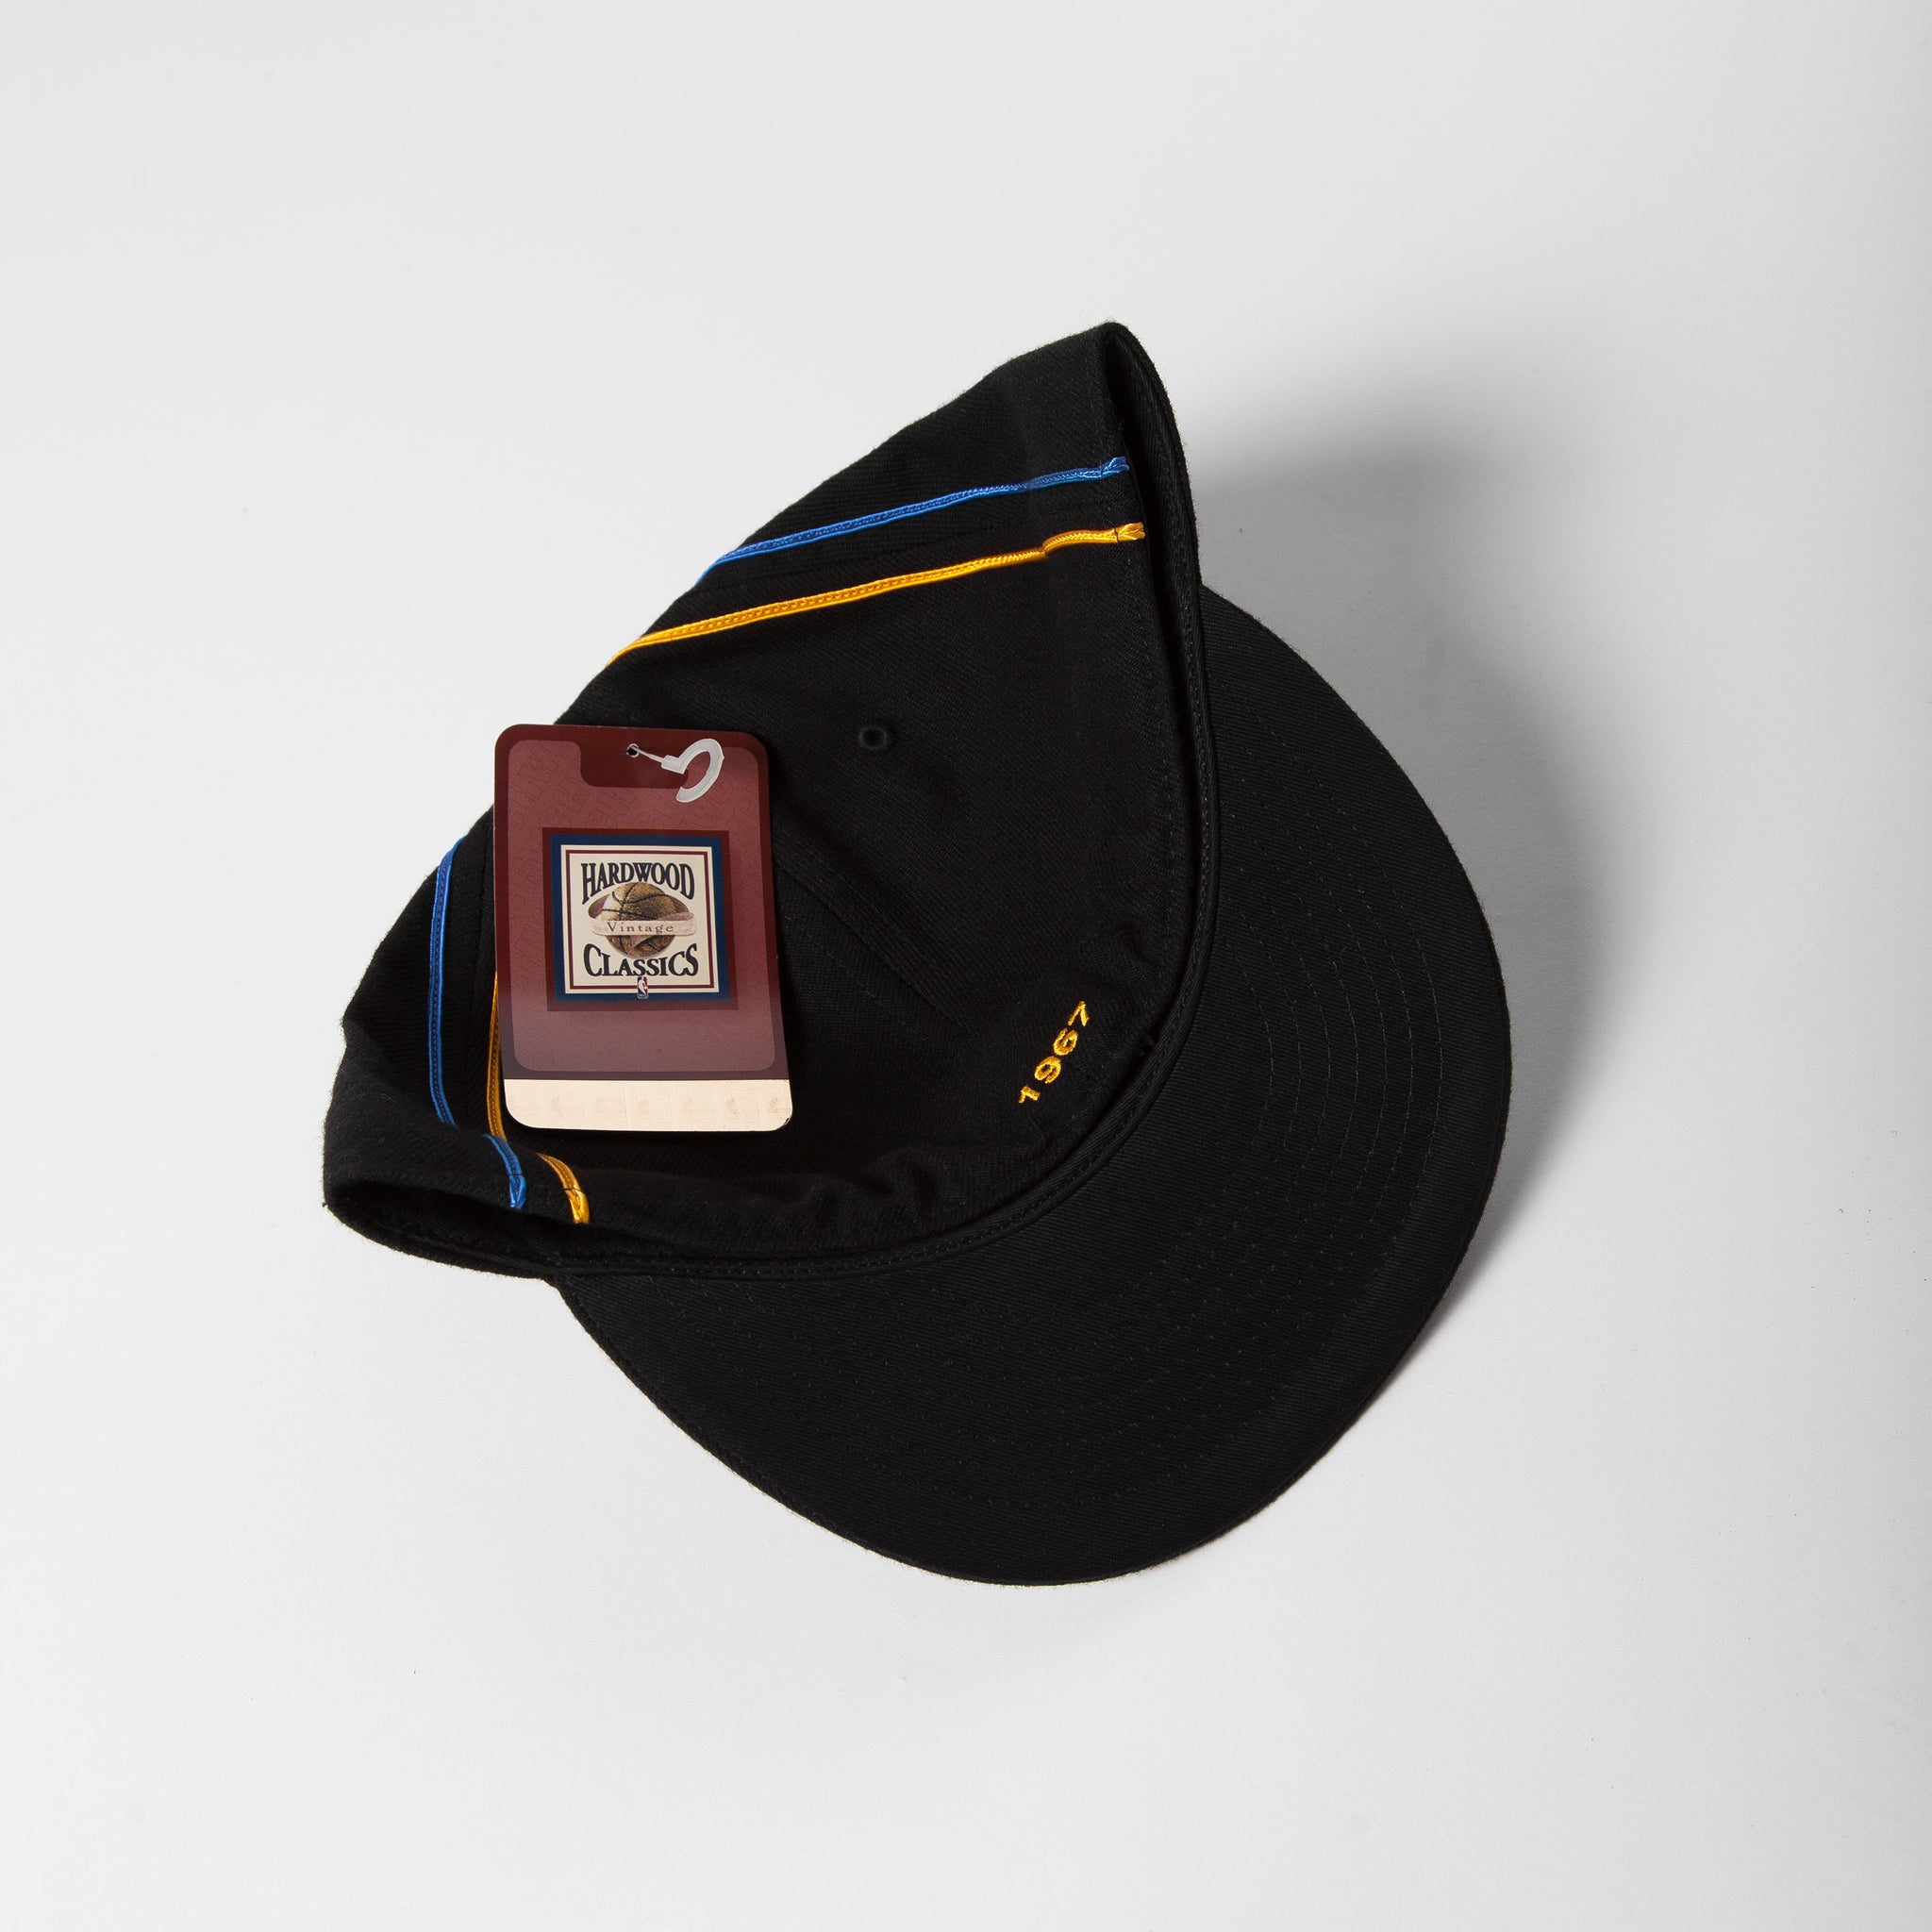 Vintage Men's Hat - Black